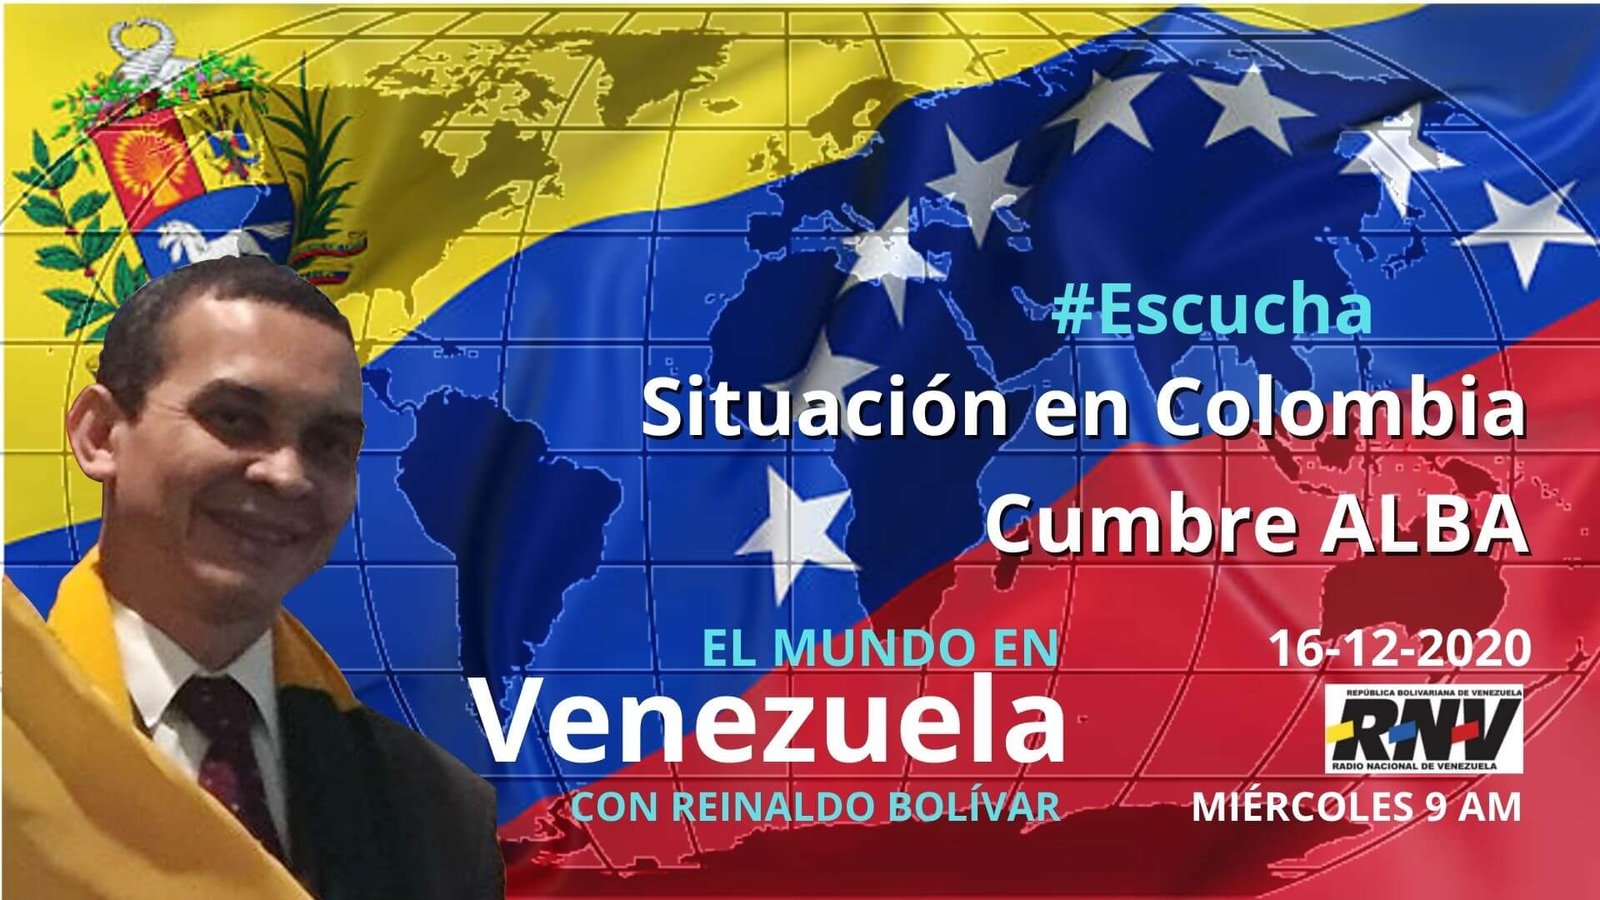 El Mundo en Venezuela 16-12-2020